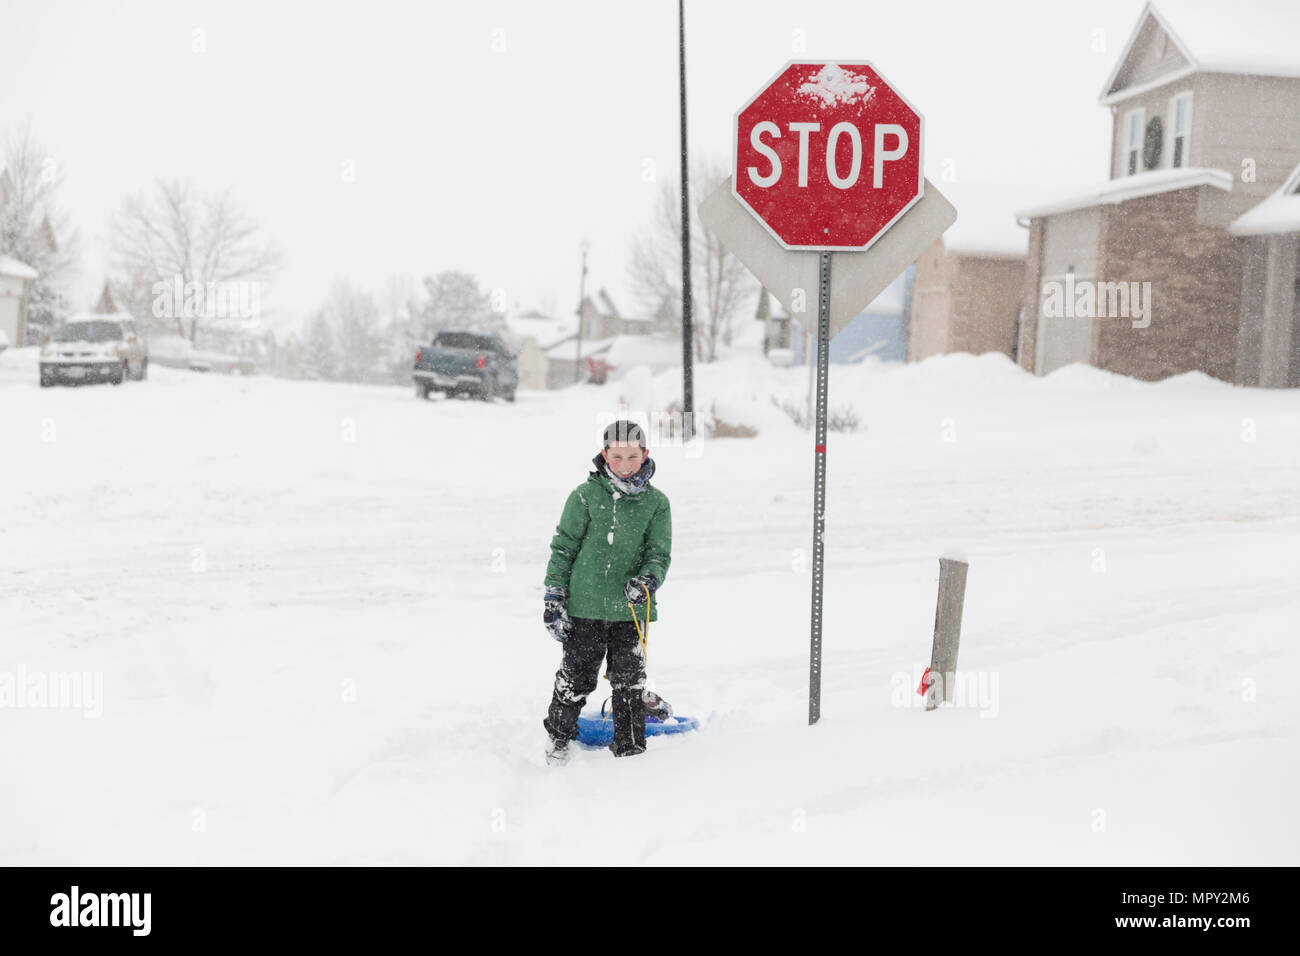 La longitud total del adolescente con carril de pie junto a la señal de pare en la carretera cubierta de nieve durante el invierno Foto de stock